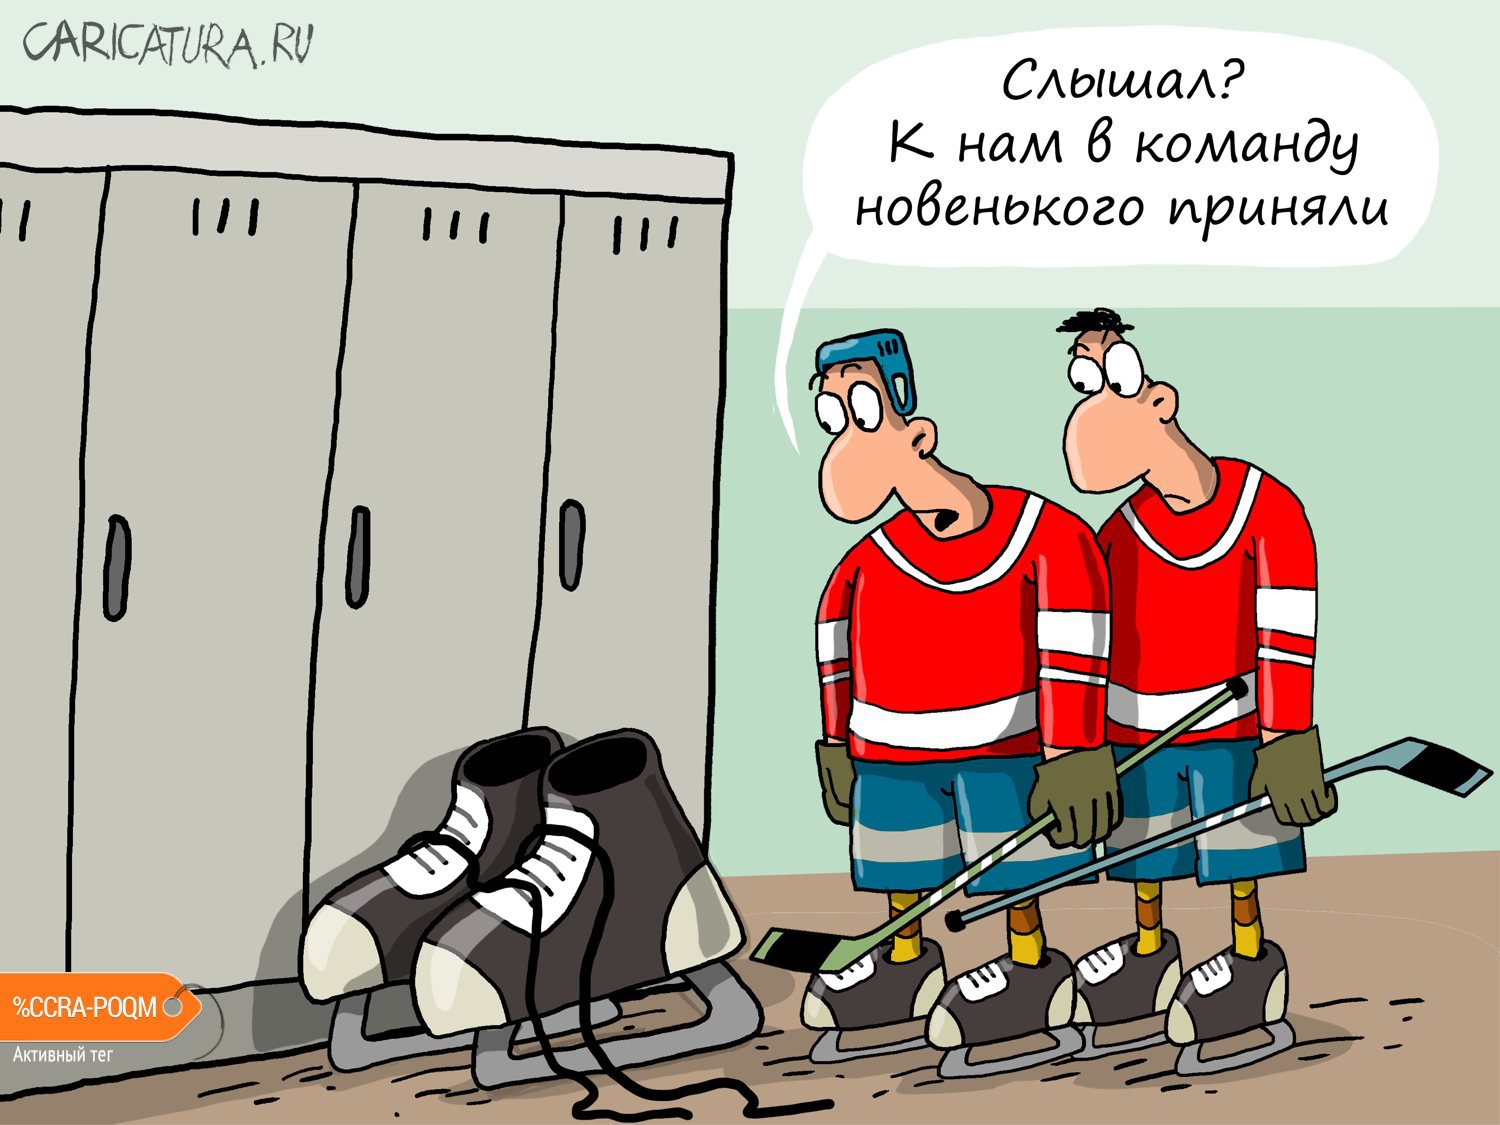 Карикатура "Новенький", Николай Крутиков